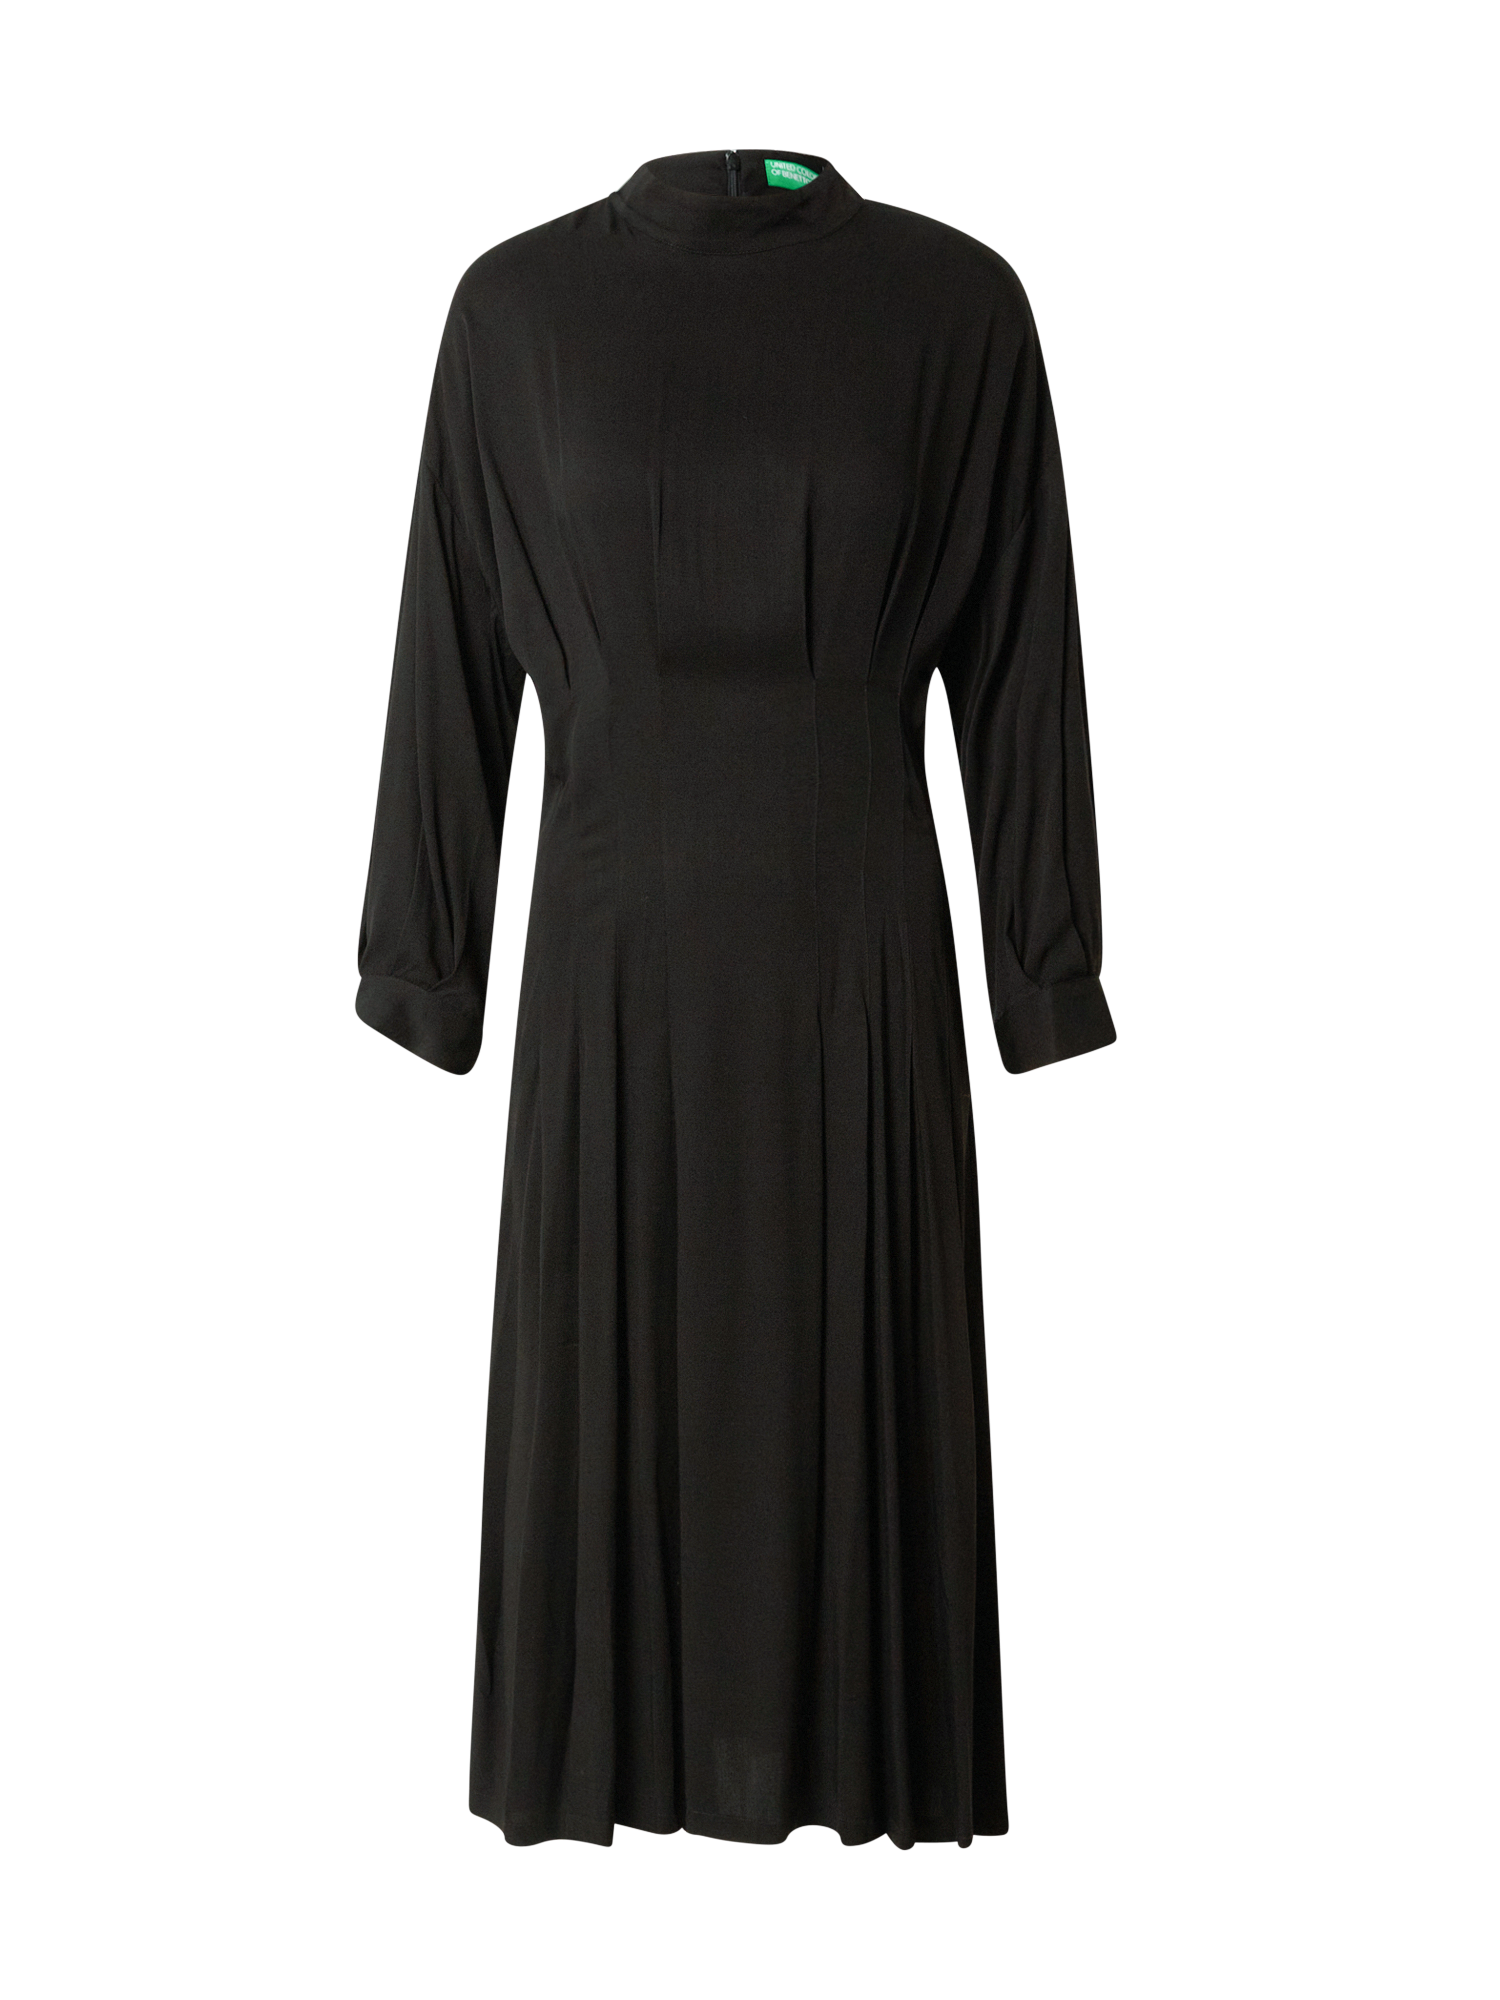 Odzież Sukienki UNITED COLORS OF BENETTON Sukienka w kolorze Czarnym 